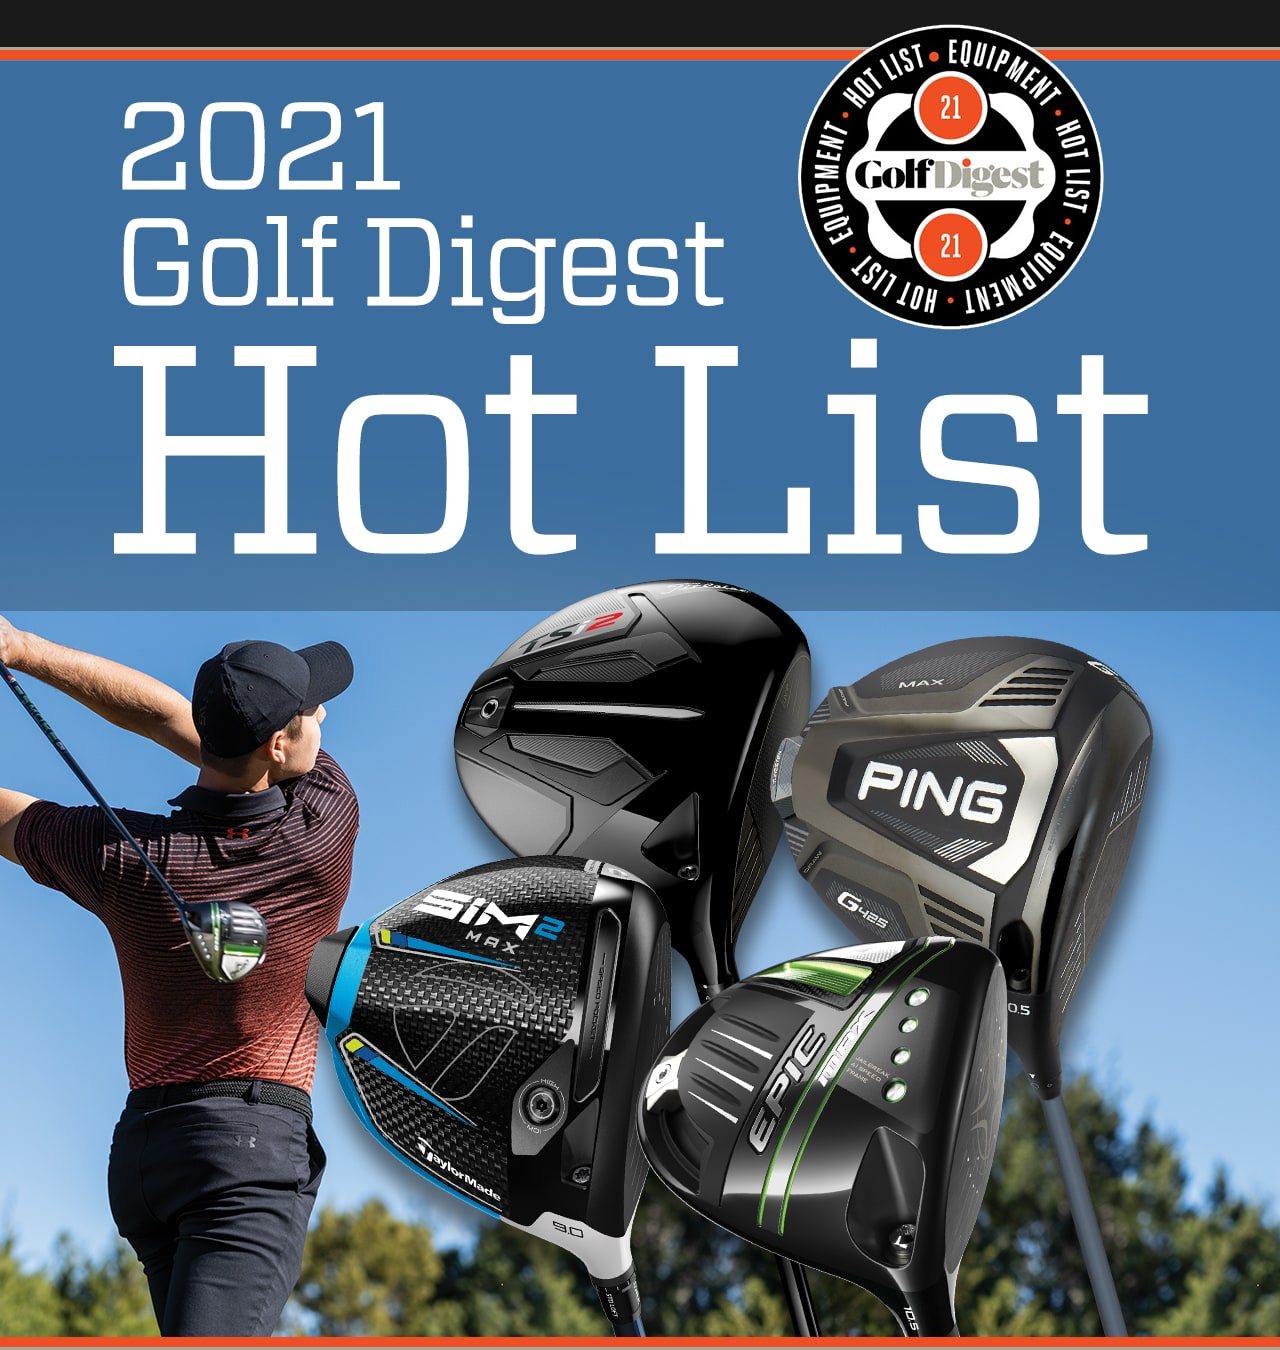 2021 Golf Digest Hot List.